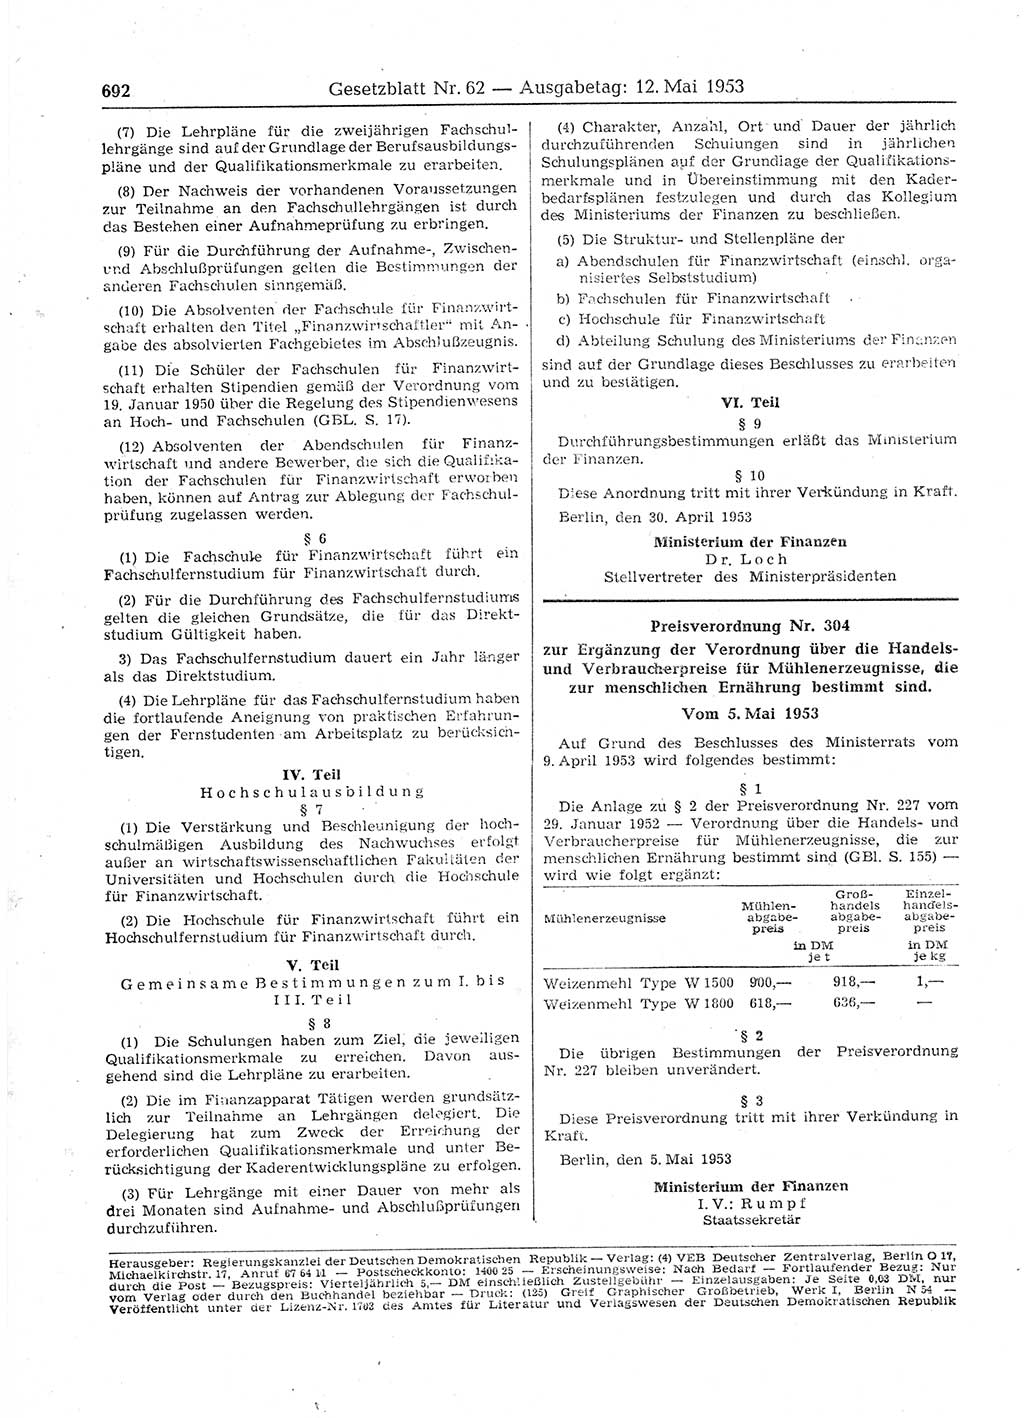 Gesetzblatt (GBl.) der Deutschen Demokratischen Republik (DDR) 1953, Seite 692 (GBl. DDR 1953, S. 692)